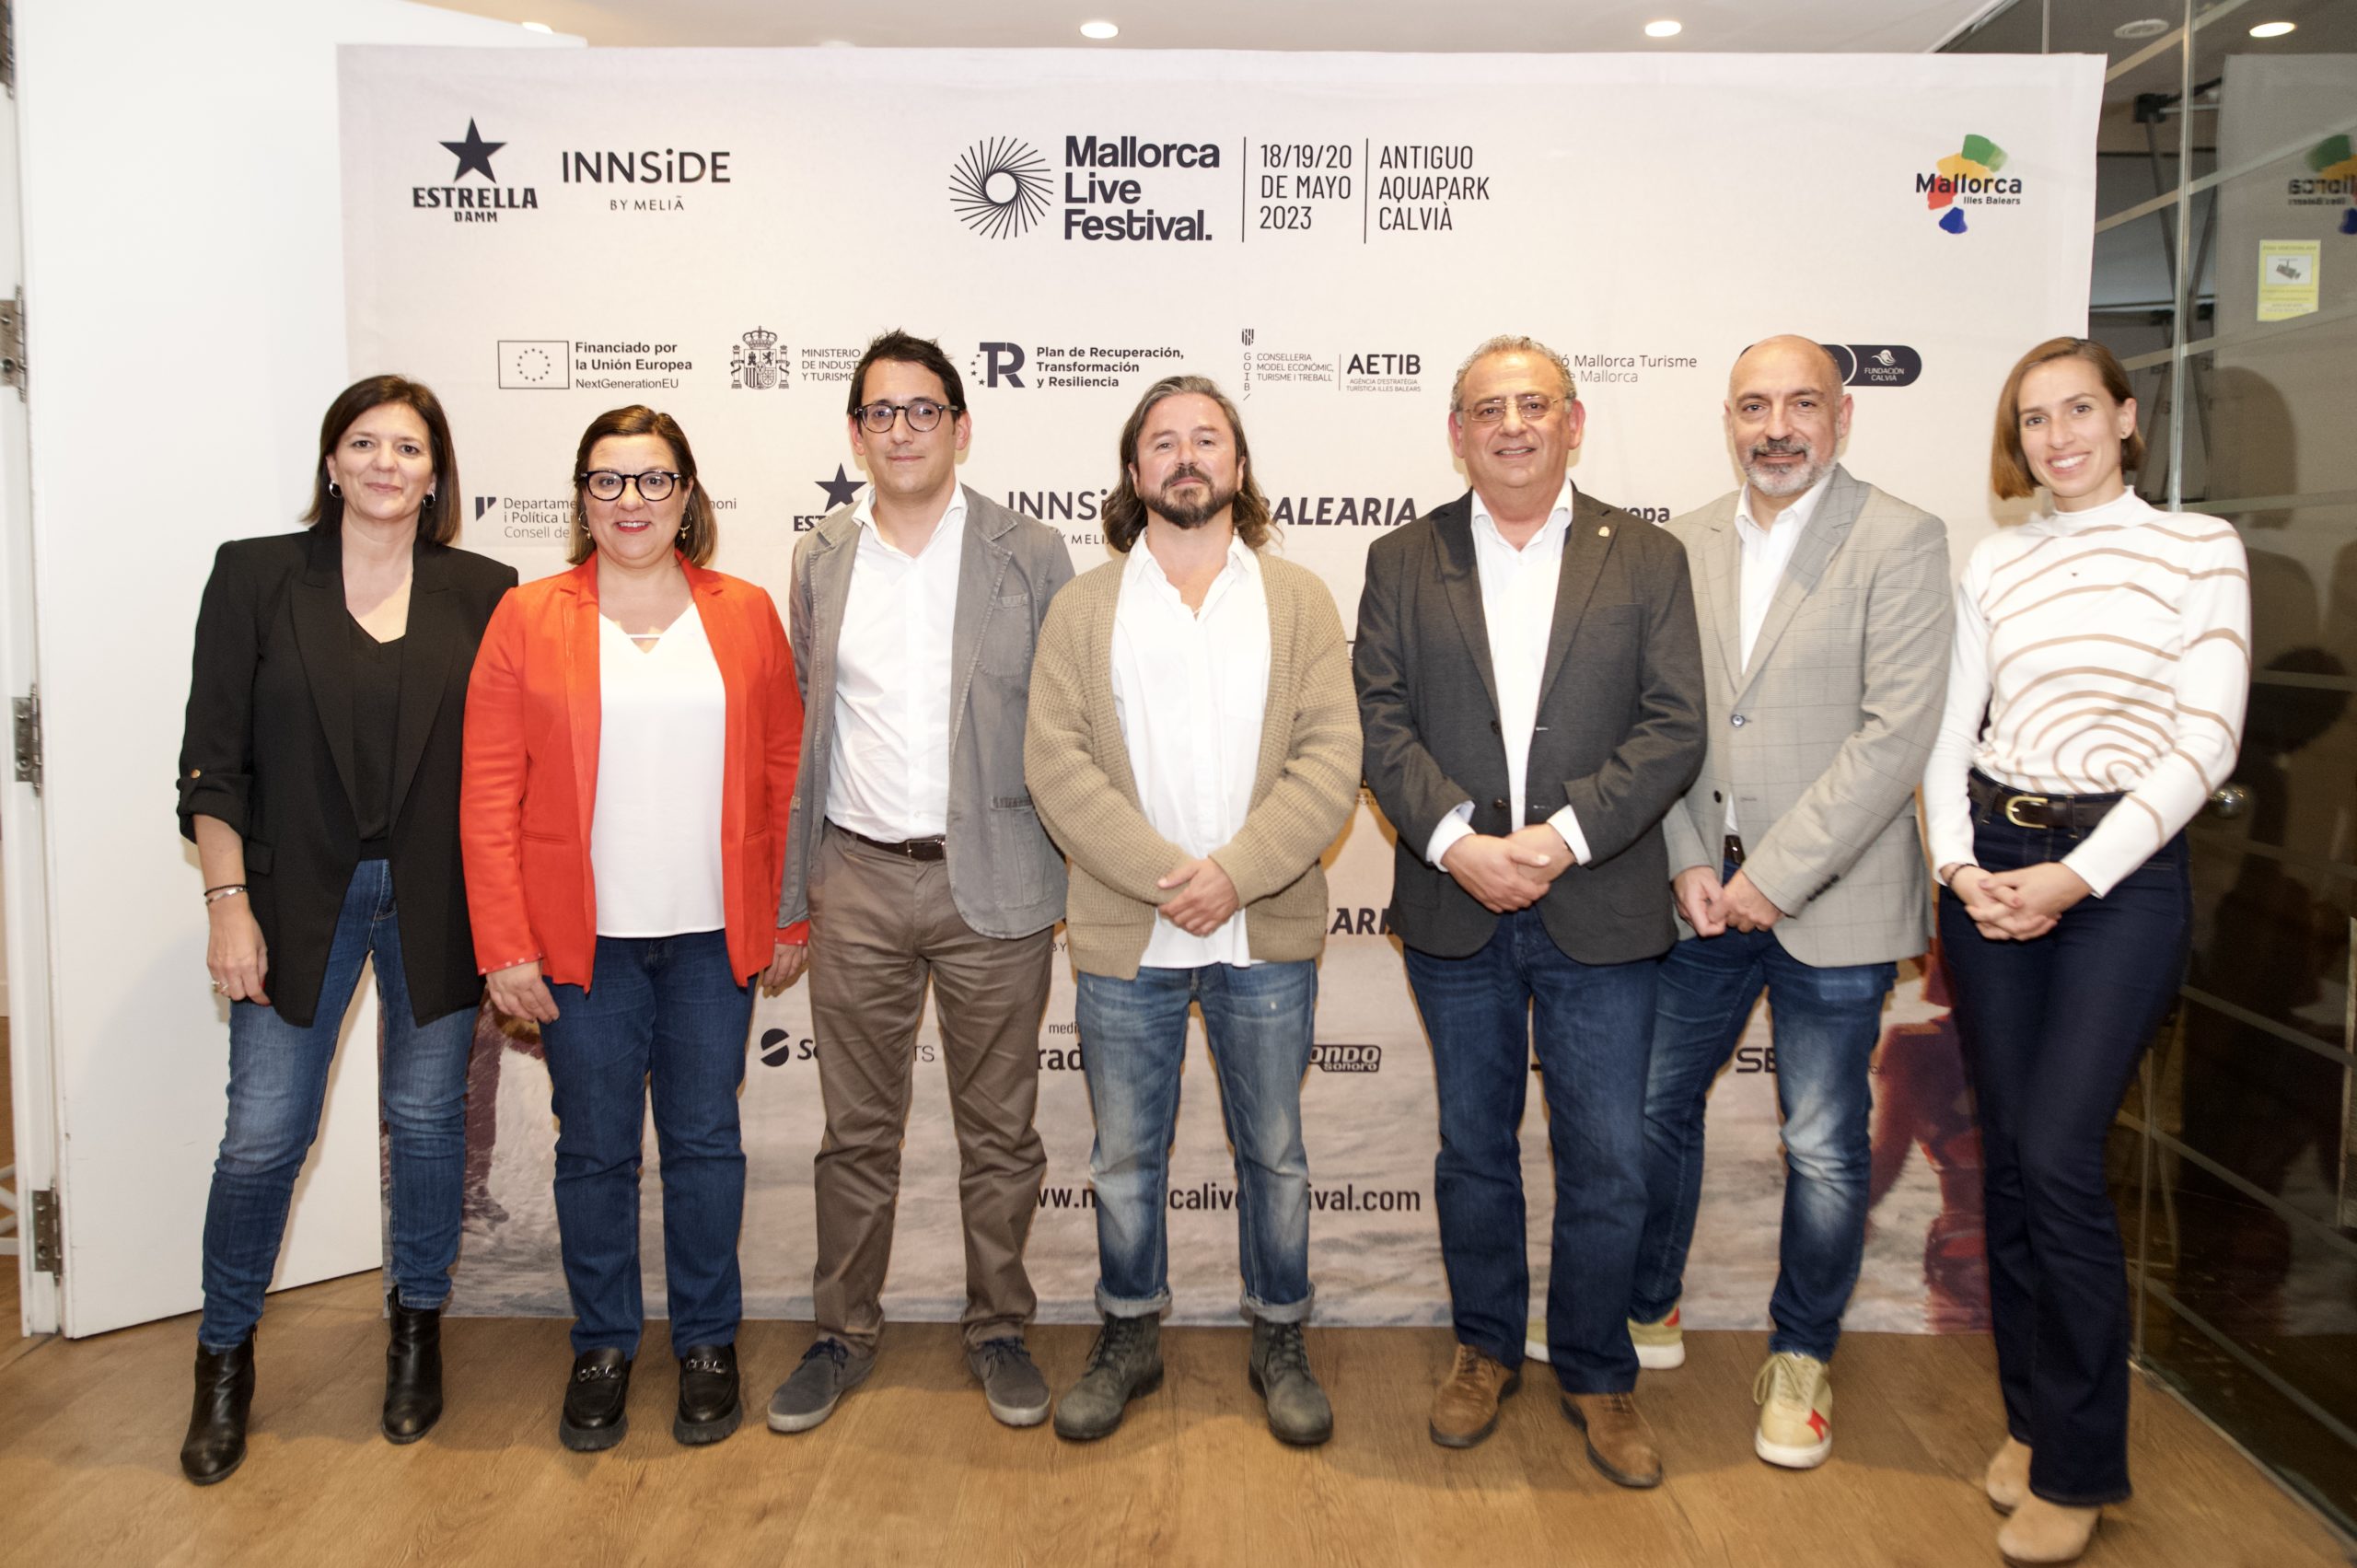 El Mallorca Live Festival generó un impacto de 10,15 millones de euros en la economía de Calvià y Palma